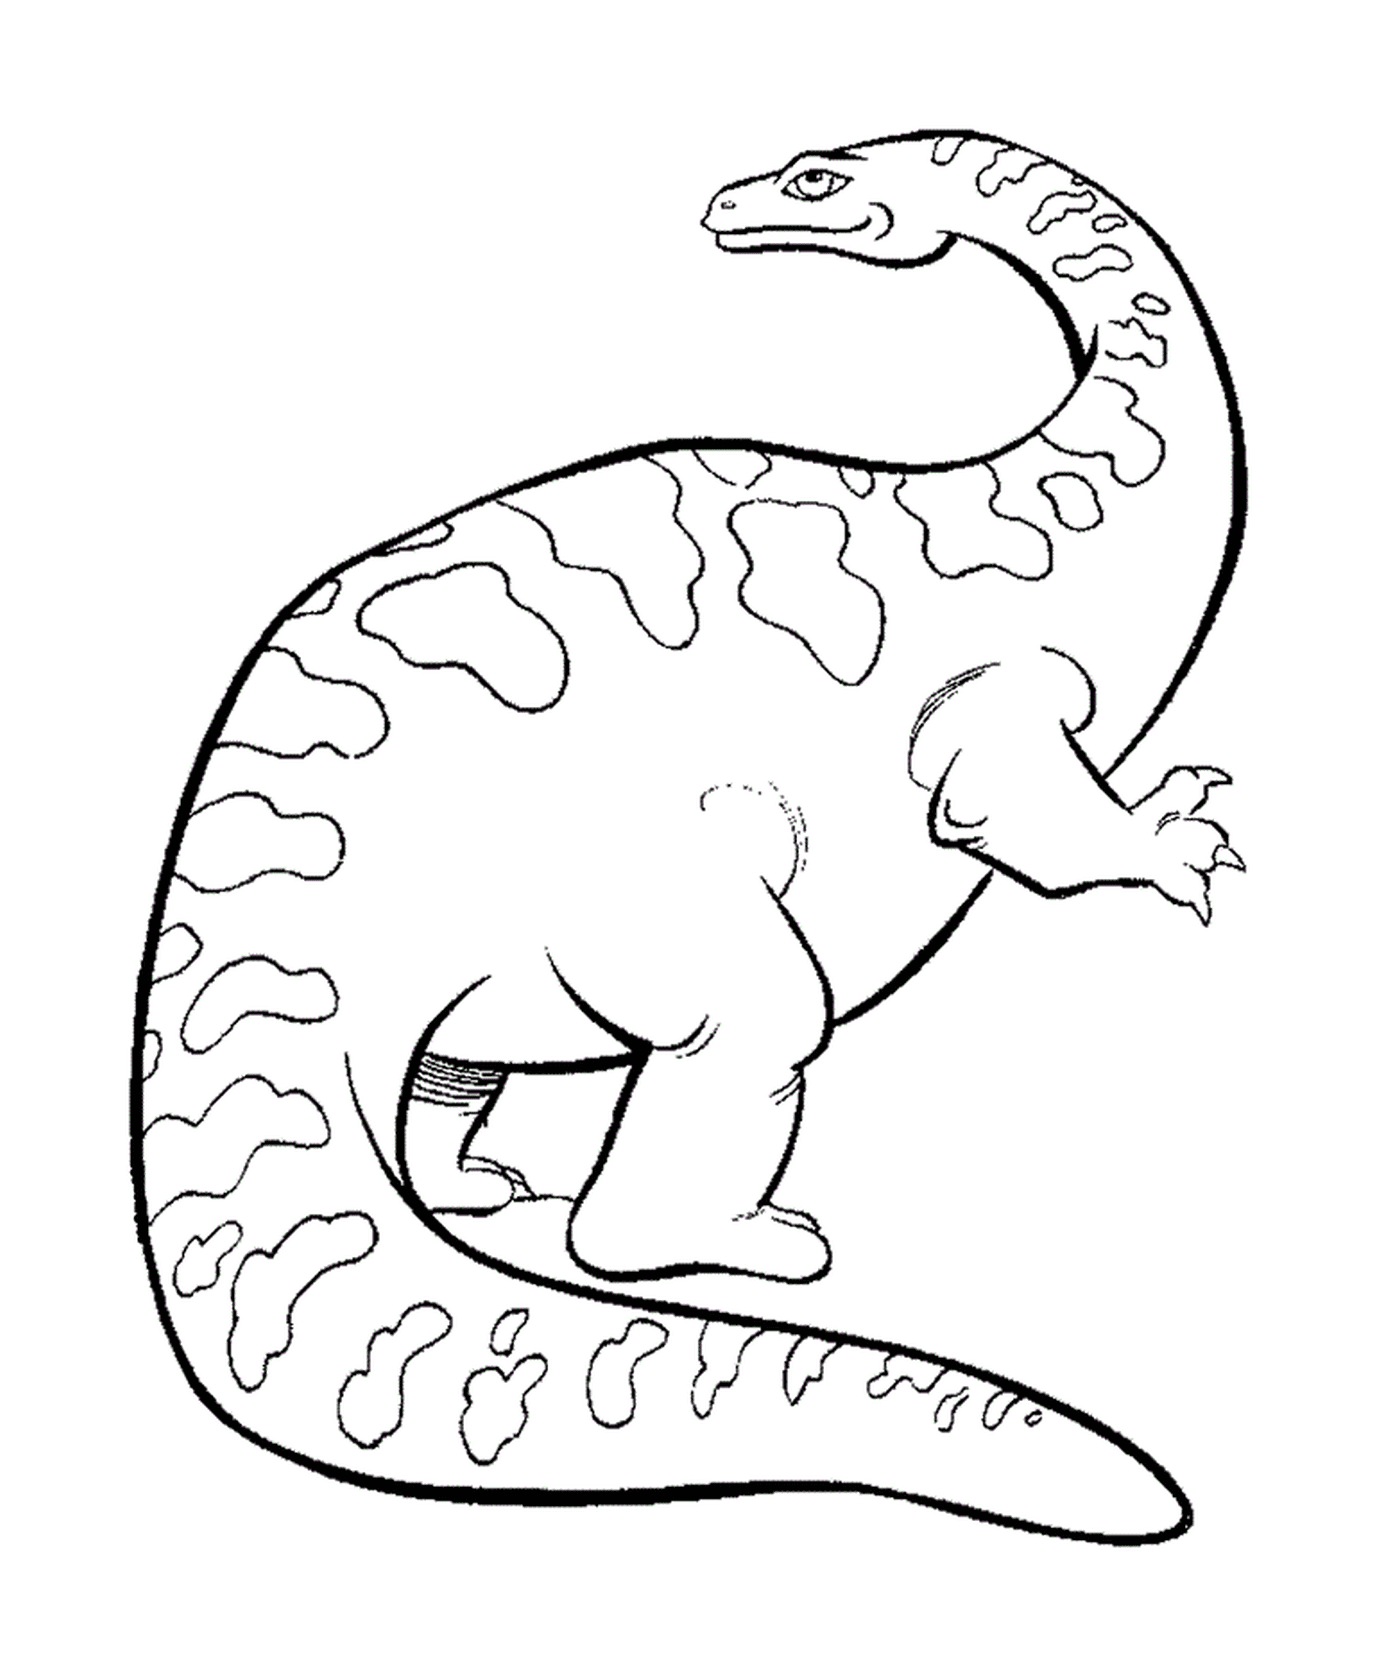  Zeichnung eines schwarz-weißen Triceratops 